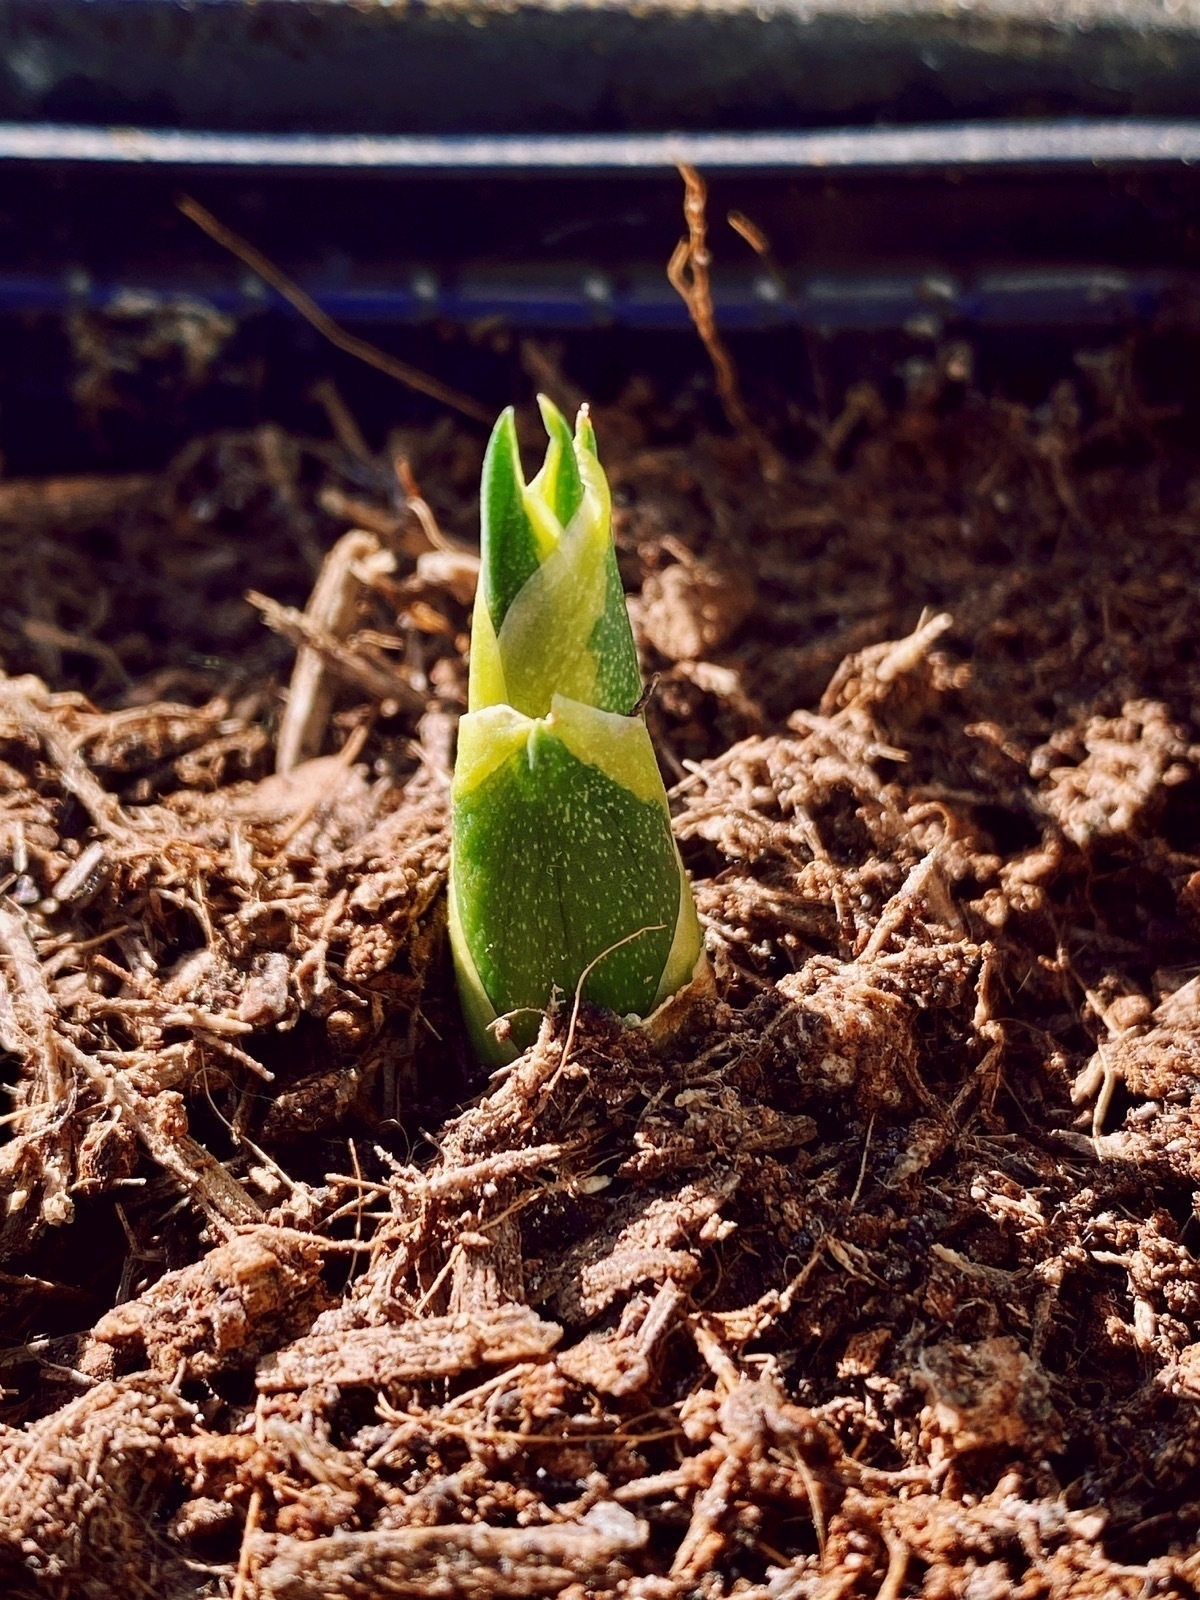 Small green plant shoot poking through soil